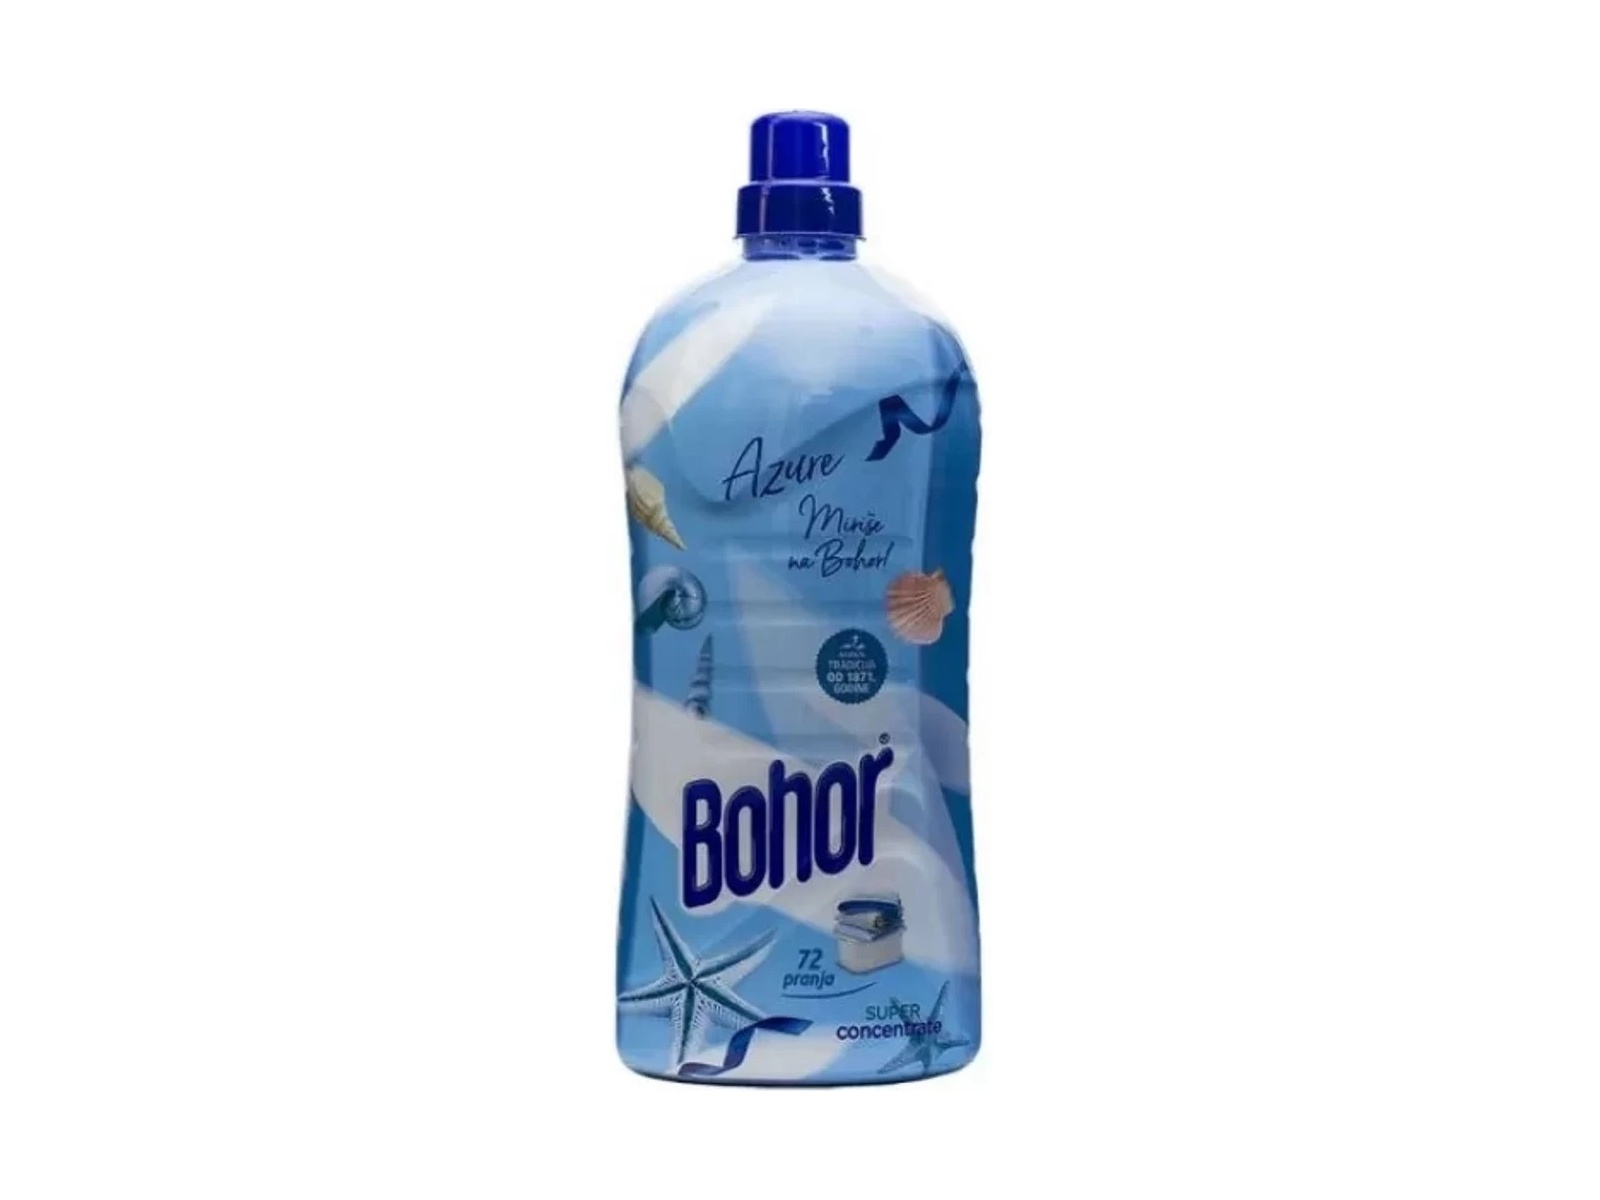 Bohor azure - Softener 1700ml